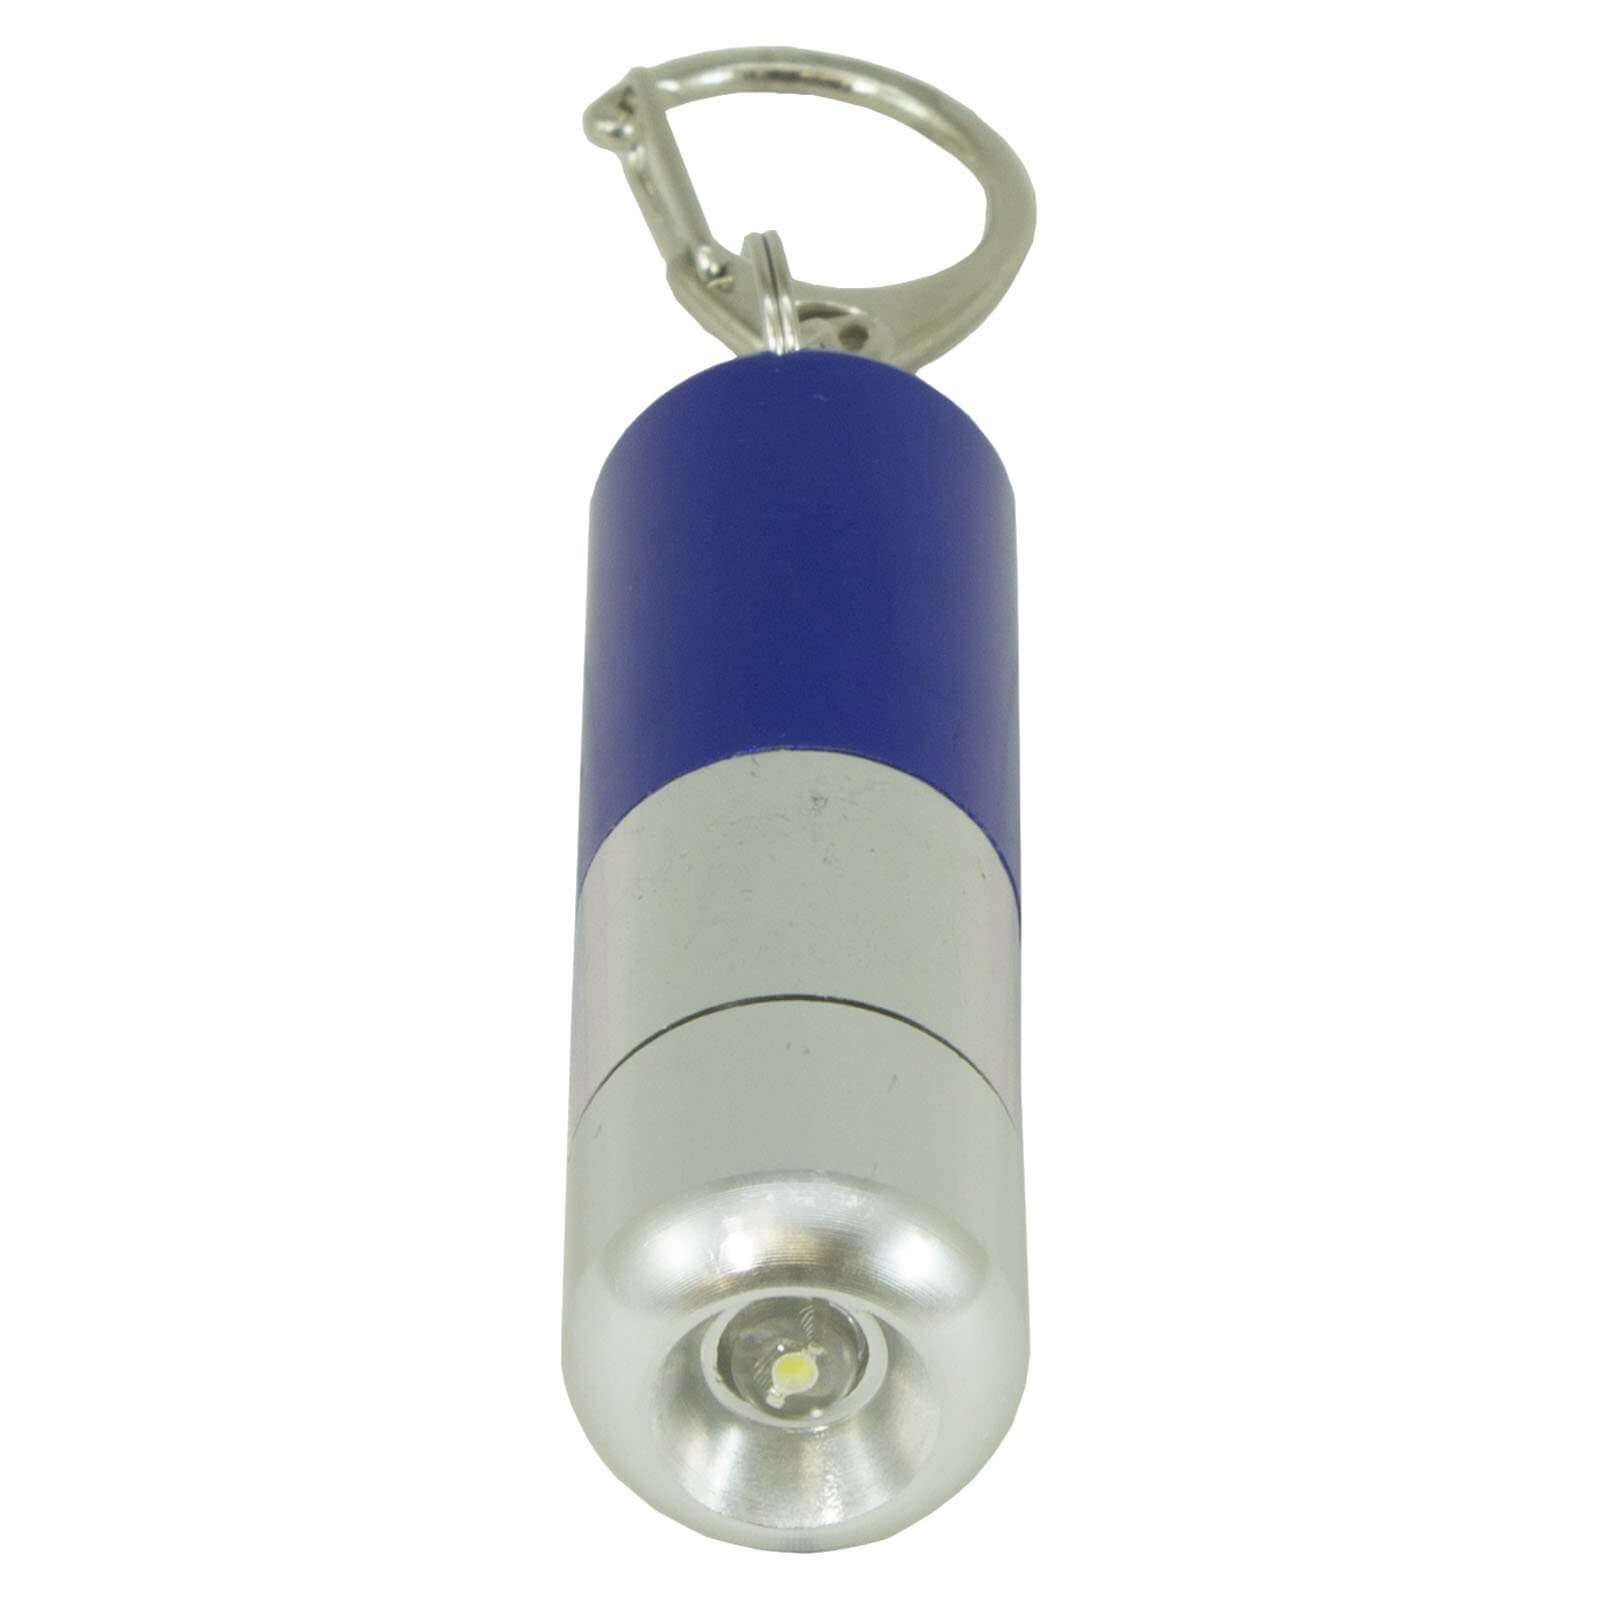 LitezAll Pill Fob LED Key Chain Flashlight - LitezAll - Keychain Lights - 6